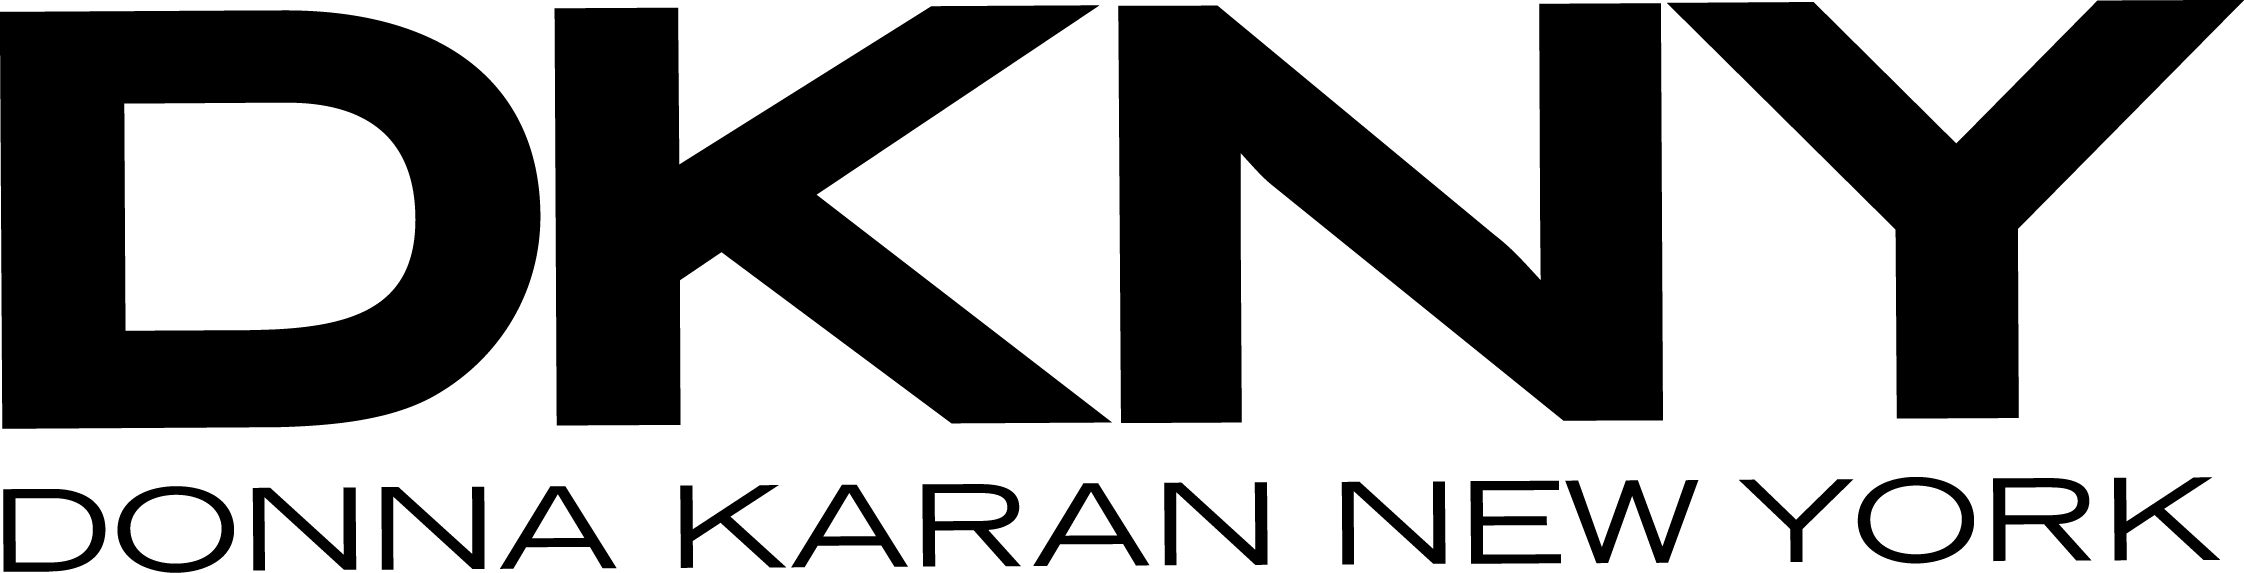 Dkny Logos